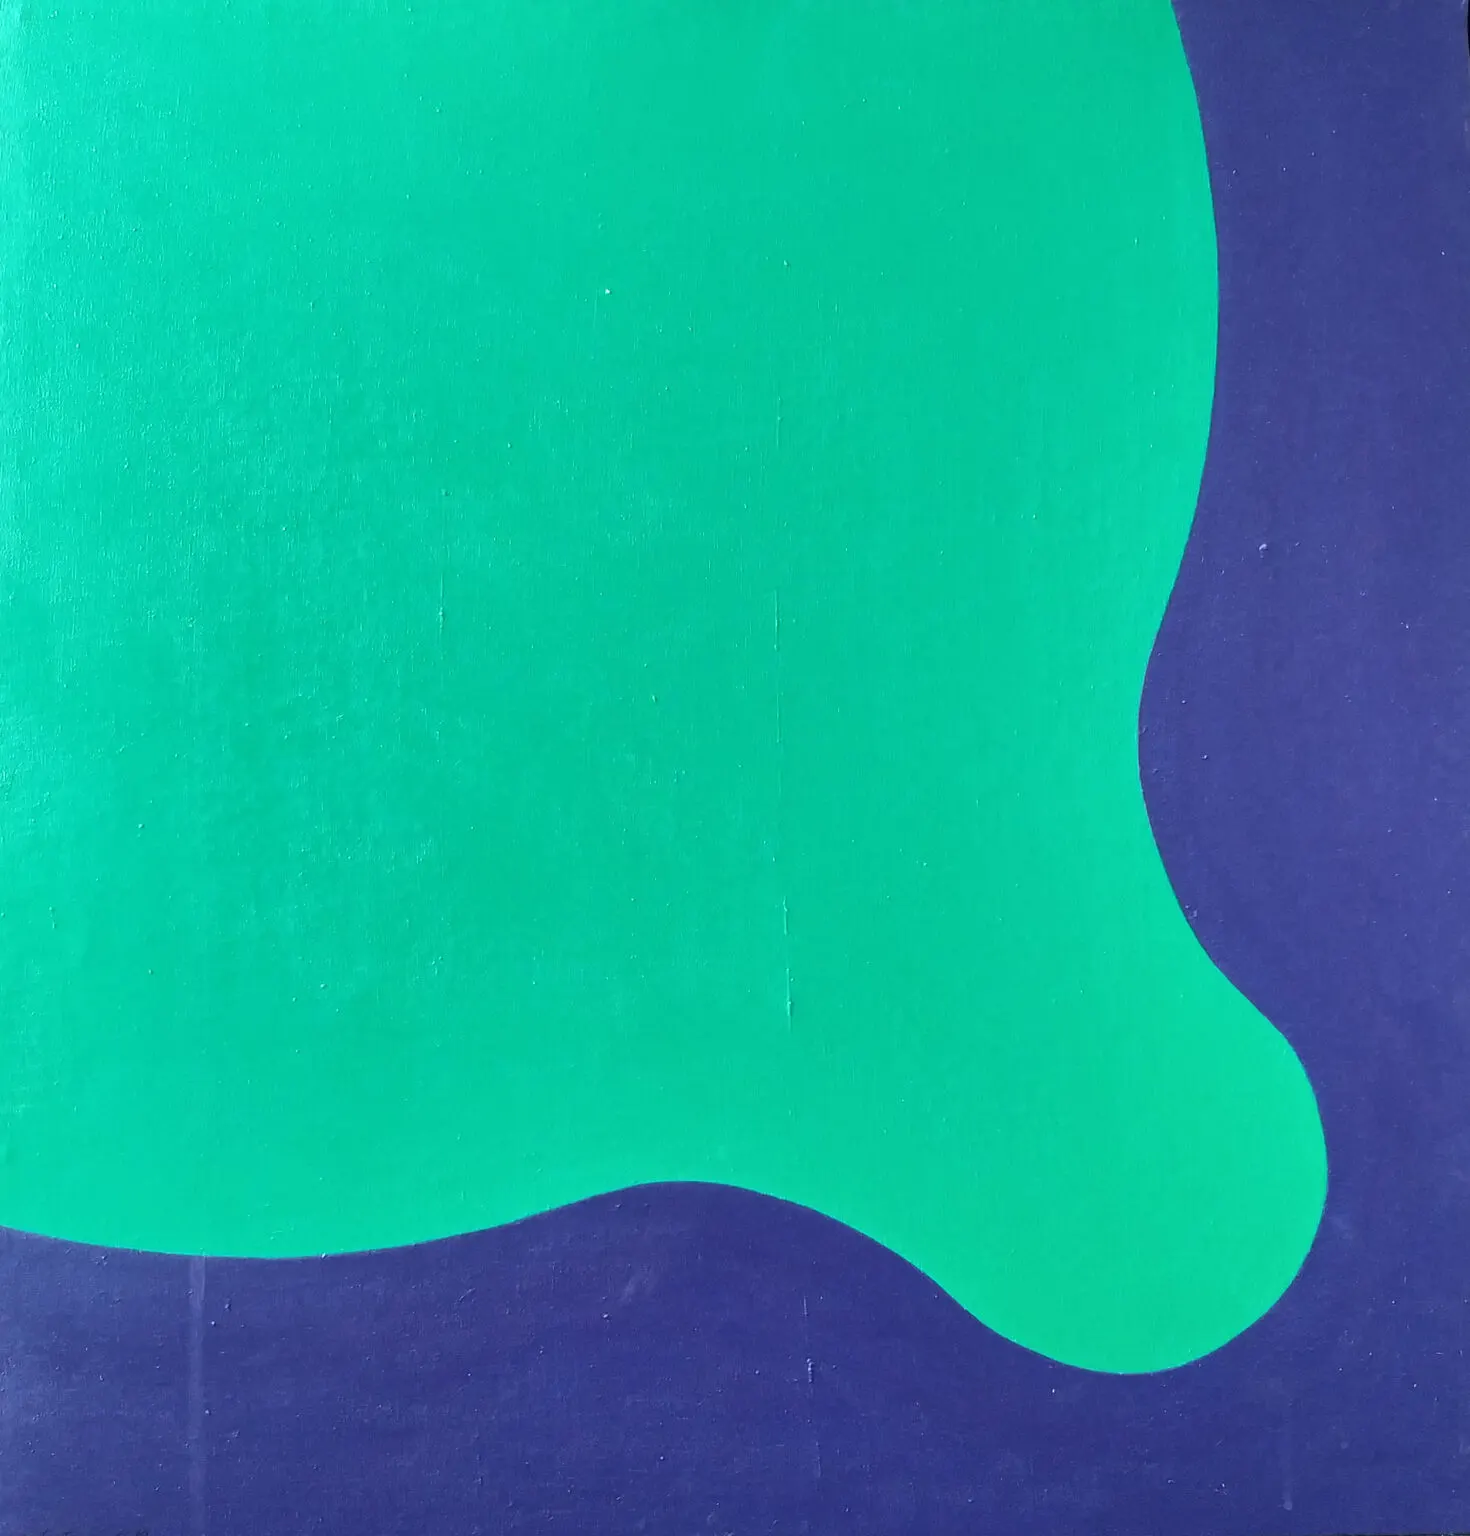 L'œuvre "Propagation-S-4-A (P)" de l'artiste Takesada Matsutani, réalisée en 1969, est une peinture à l'acrylique sur toile. Cette pièce, caractéristique du mouvement artistique japonais de l'art informel et de l'art abstrait, représente probablement une composition organique ou abstraite. Matsutani est connu pour son utilisation innovante de la matière et de la texture, souvent en expérimentant avec des matériaux comme la colle, le vinyle et l'acrylique. "Propagation-S-4-A (P)" peut ainsi présenter des formes organiques en relief ou des motifs abstraits caractéristiques du style de Matsutani. Cette œuvre reflète le désir de l'artiste de créer une expérience sensorielle immersive, explorant les limites entre la peinture et la sculpture tout en invitant le spectateur à contempler les qualités tactiles et visuelles de la matière.